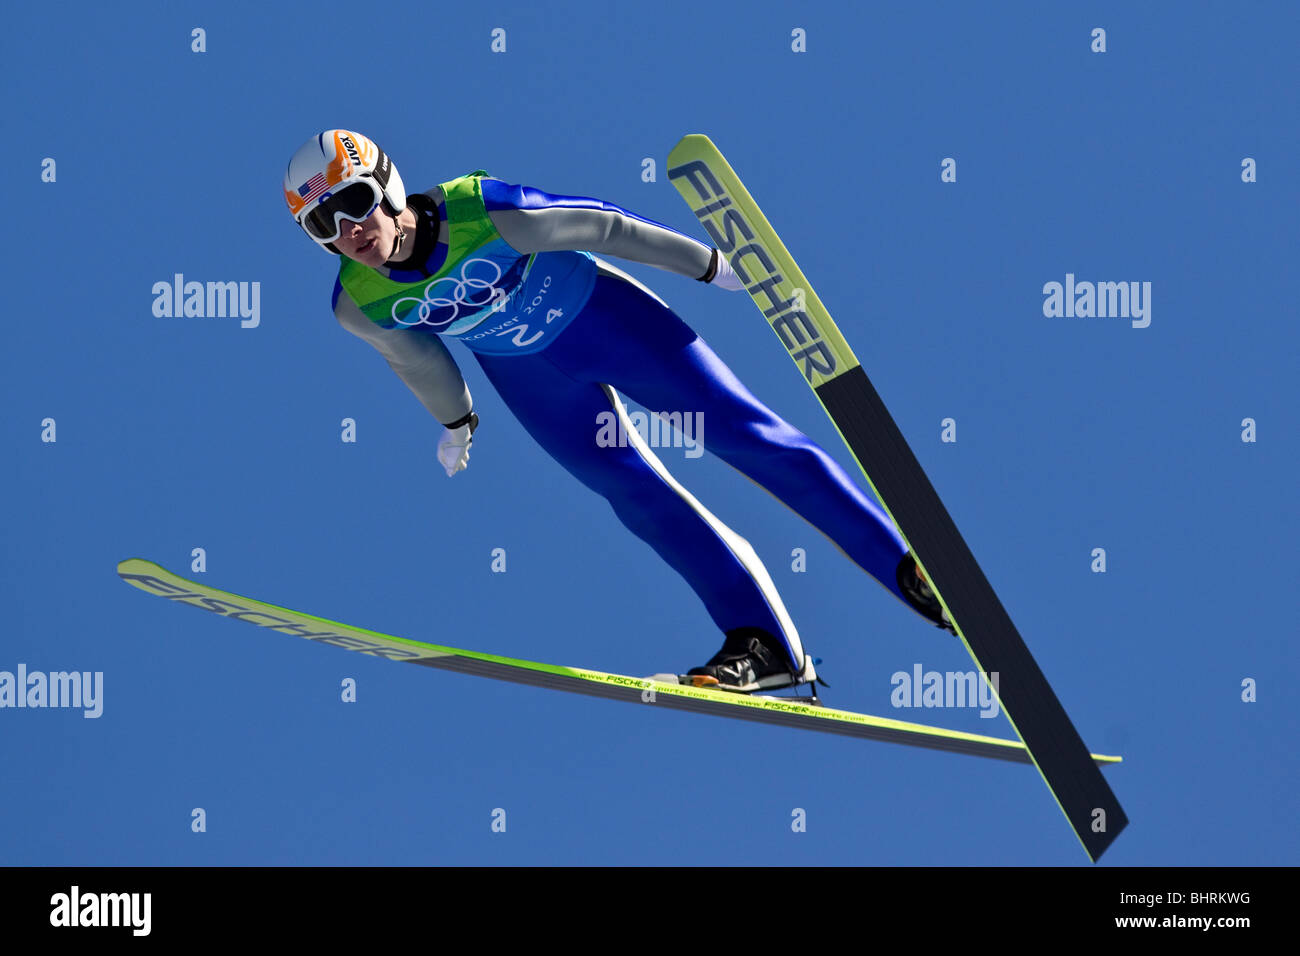 Nicholas Alexander (USA) en concurrence dans le cas de l'équipe de saut à ski aux Jeux Olympiques d'hiver de 2010, Vancouver, Colombie-Britannique. Banque D'Images